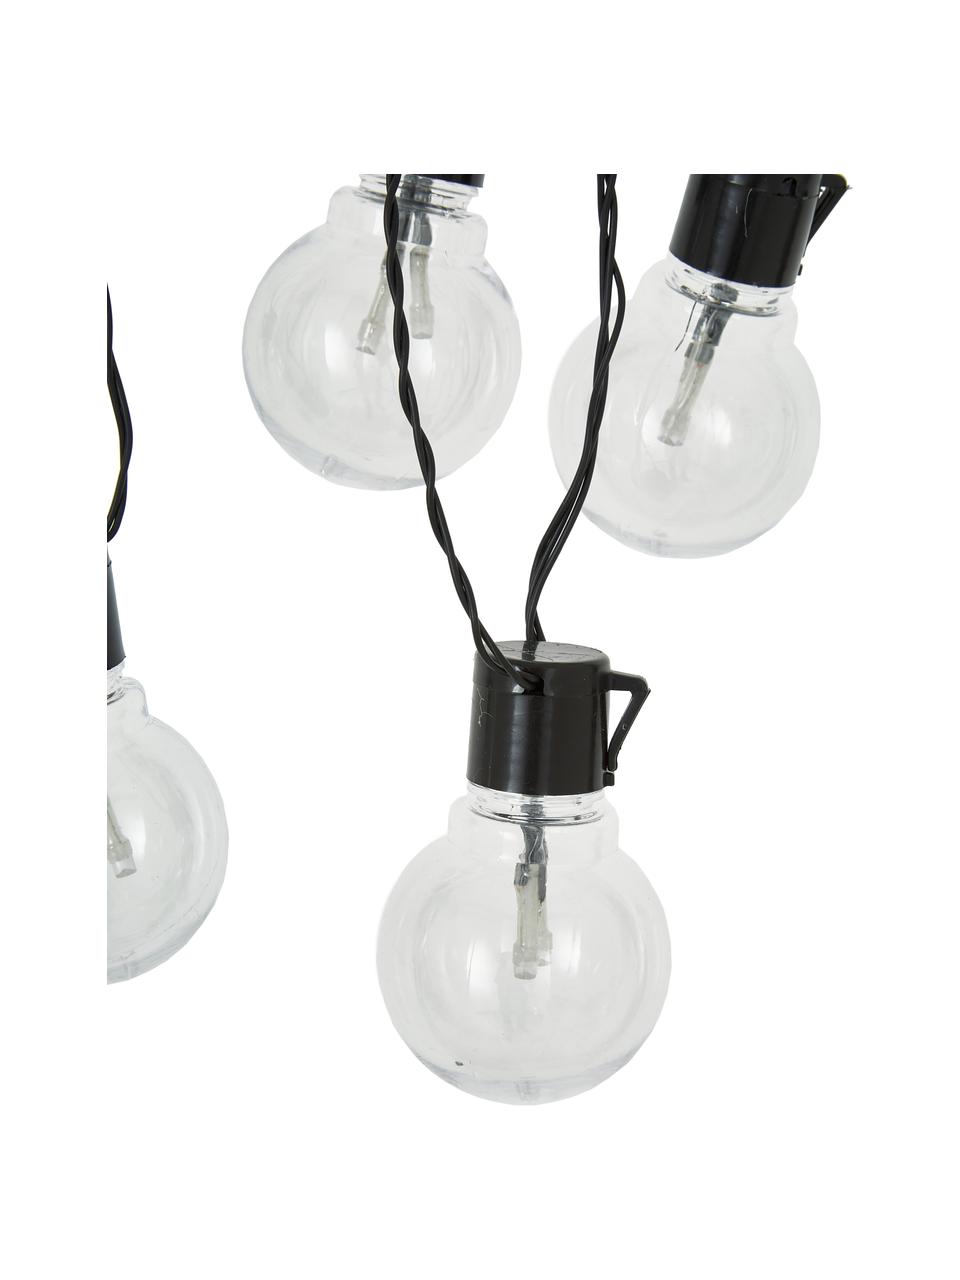 Outdoor LED-Lichterkette Partaj, 950 cm, 16 Lampions, Lampions: Kunststoff, Schwarz, L 950 cm